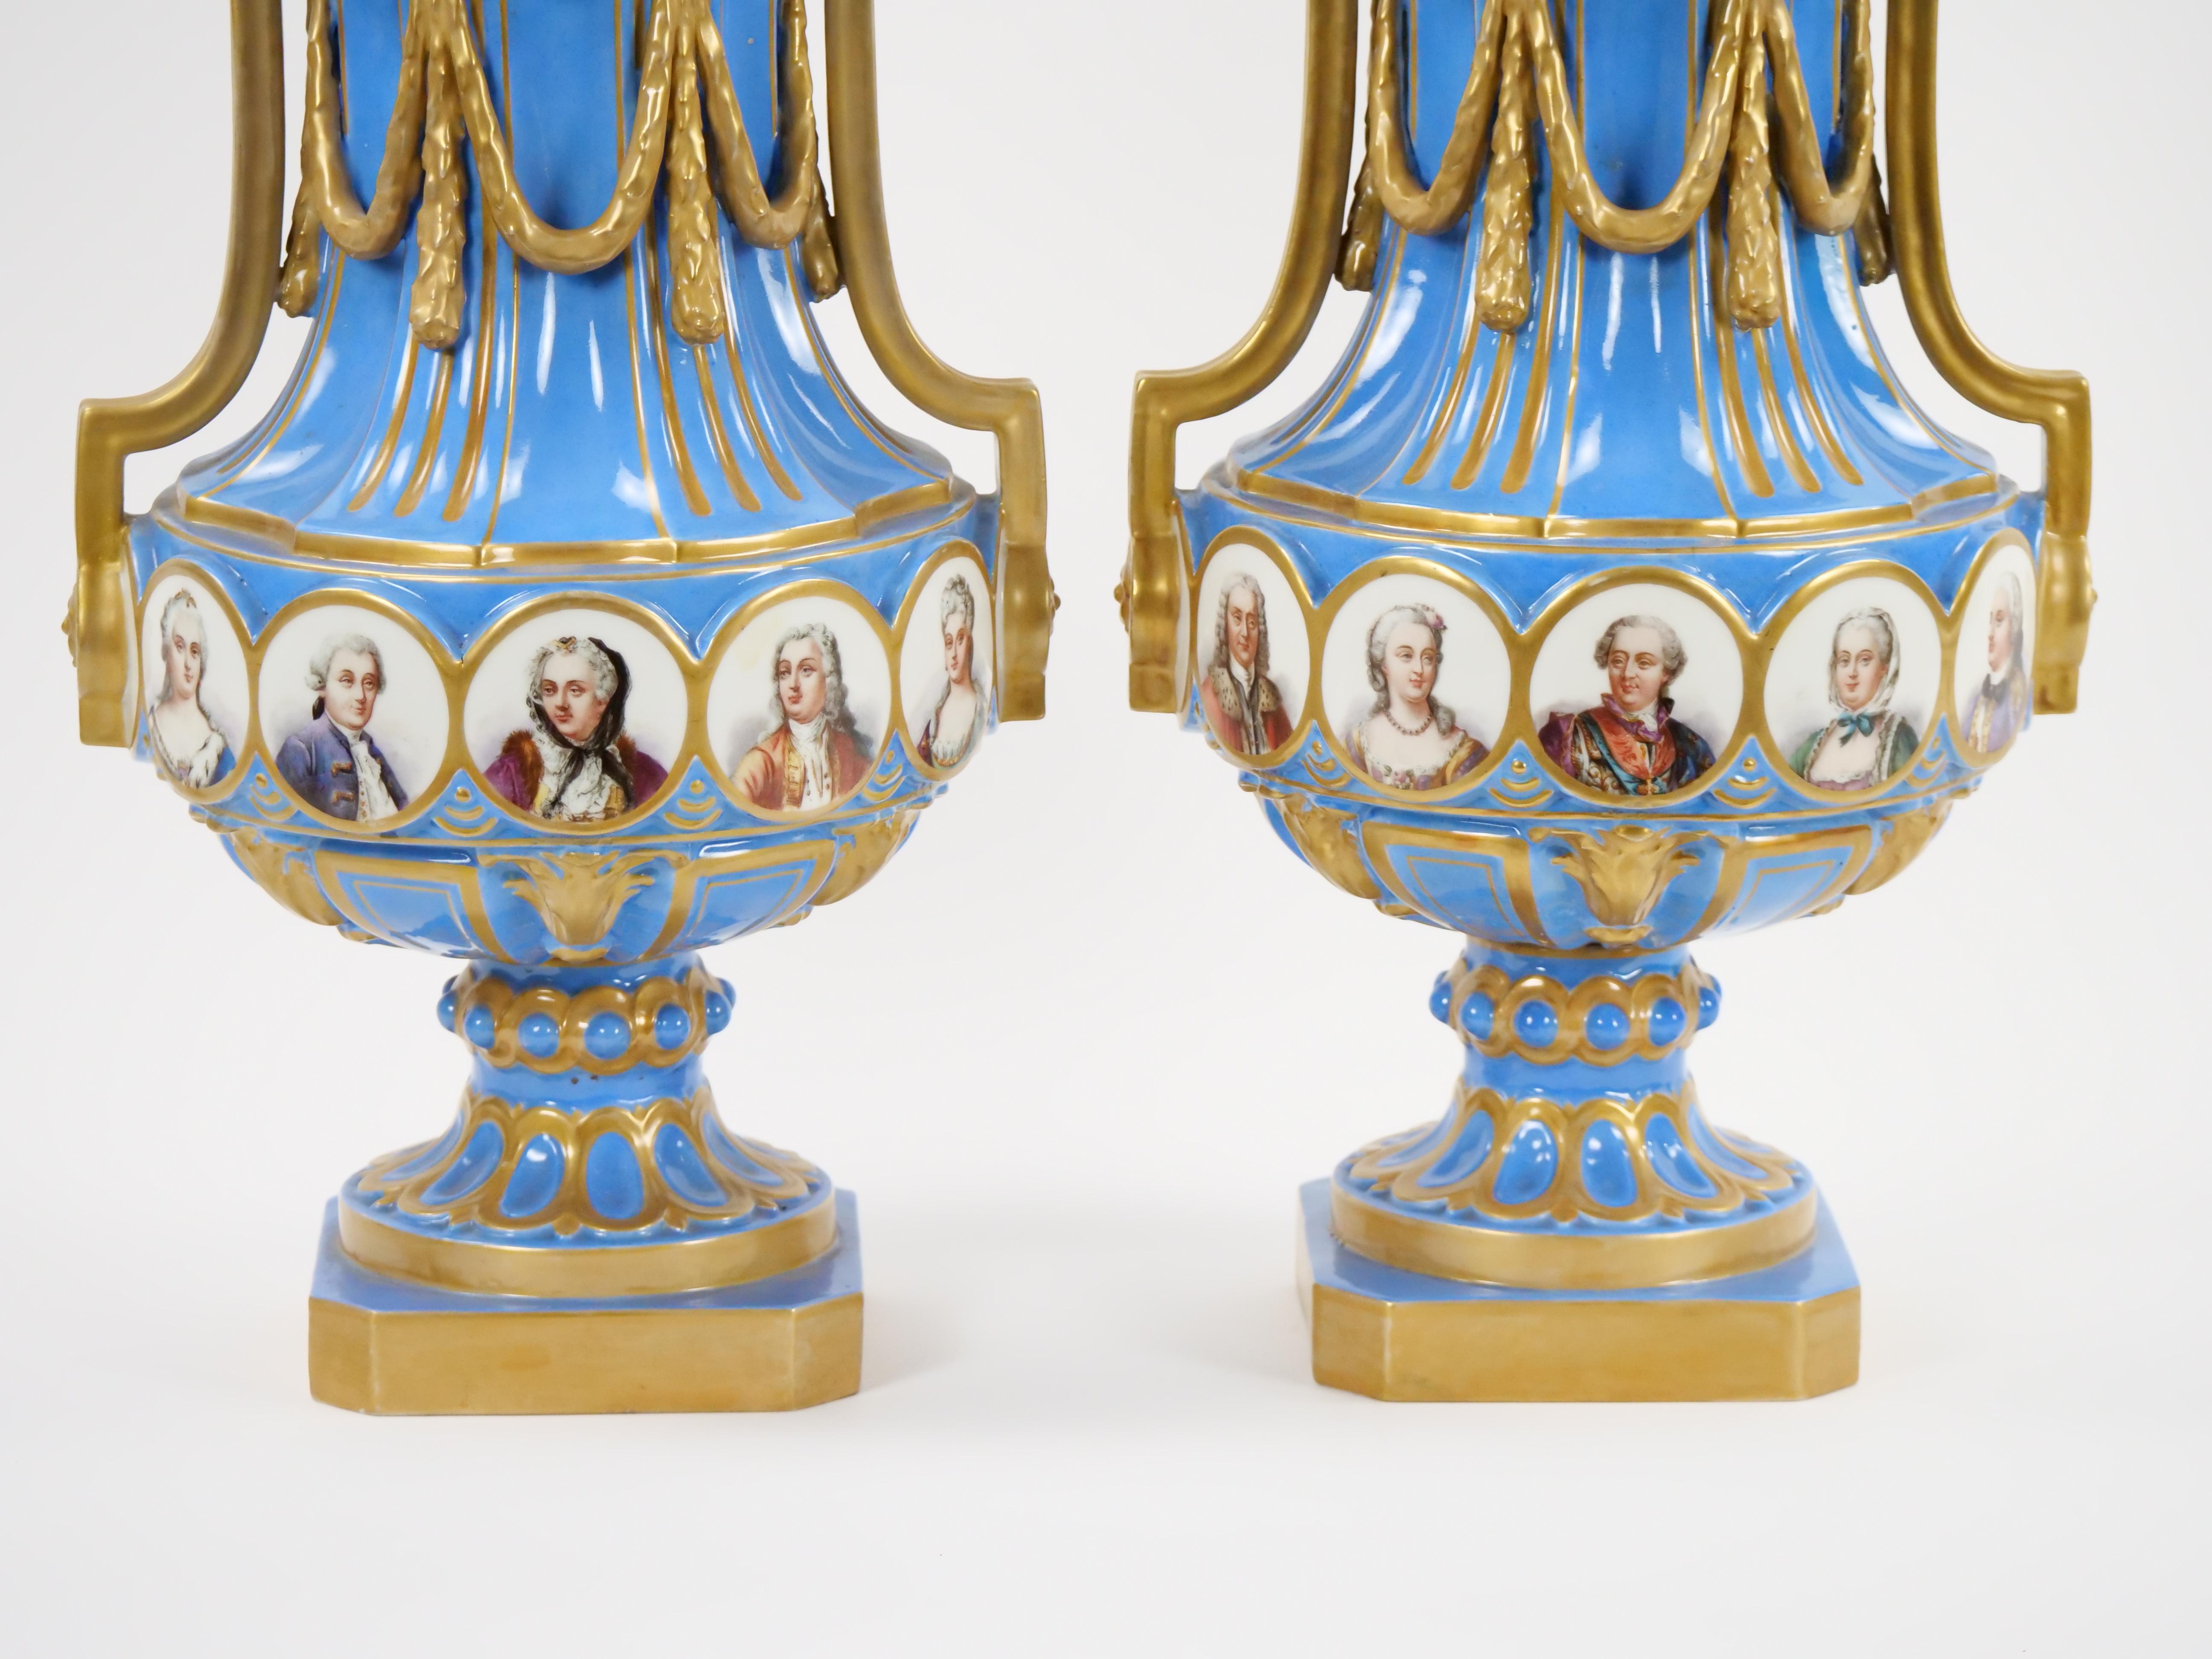 Genießen Sie den Charme der französischen Kunst des 19. Jahrhunderts mit dieser exquisiten blauen Celeste-Vase im Stil von Louis XV Sèvres, komplett mit den dazugehörigen Deckeln. Diese Vase/bedeckte Urne ist von der Eleganz der Epoche Ludwigs XV.